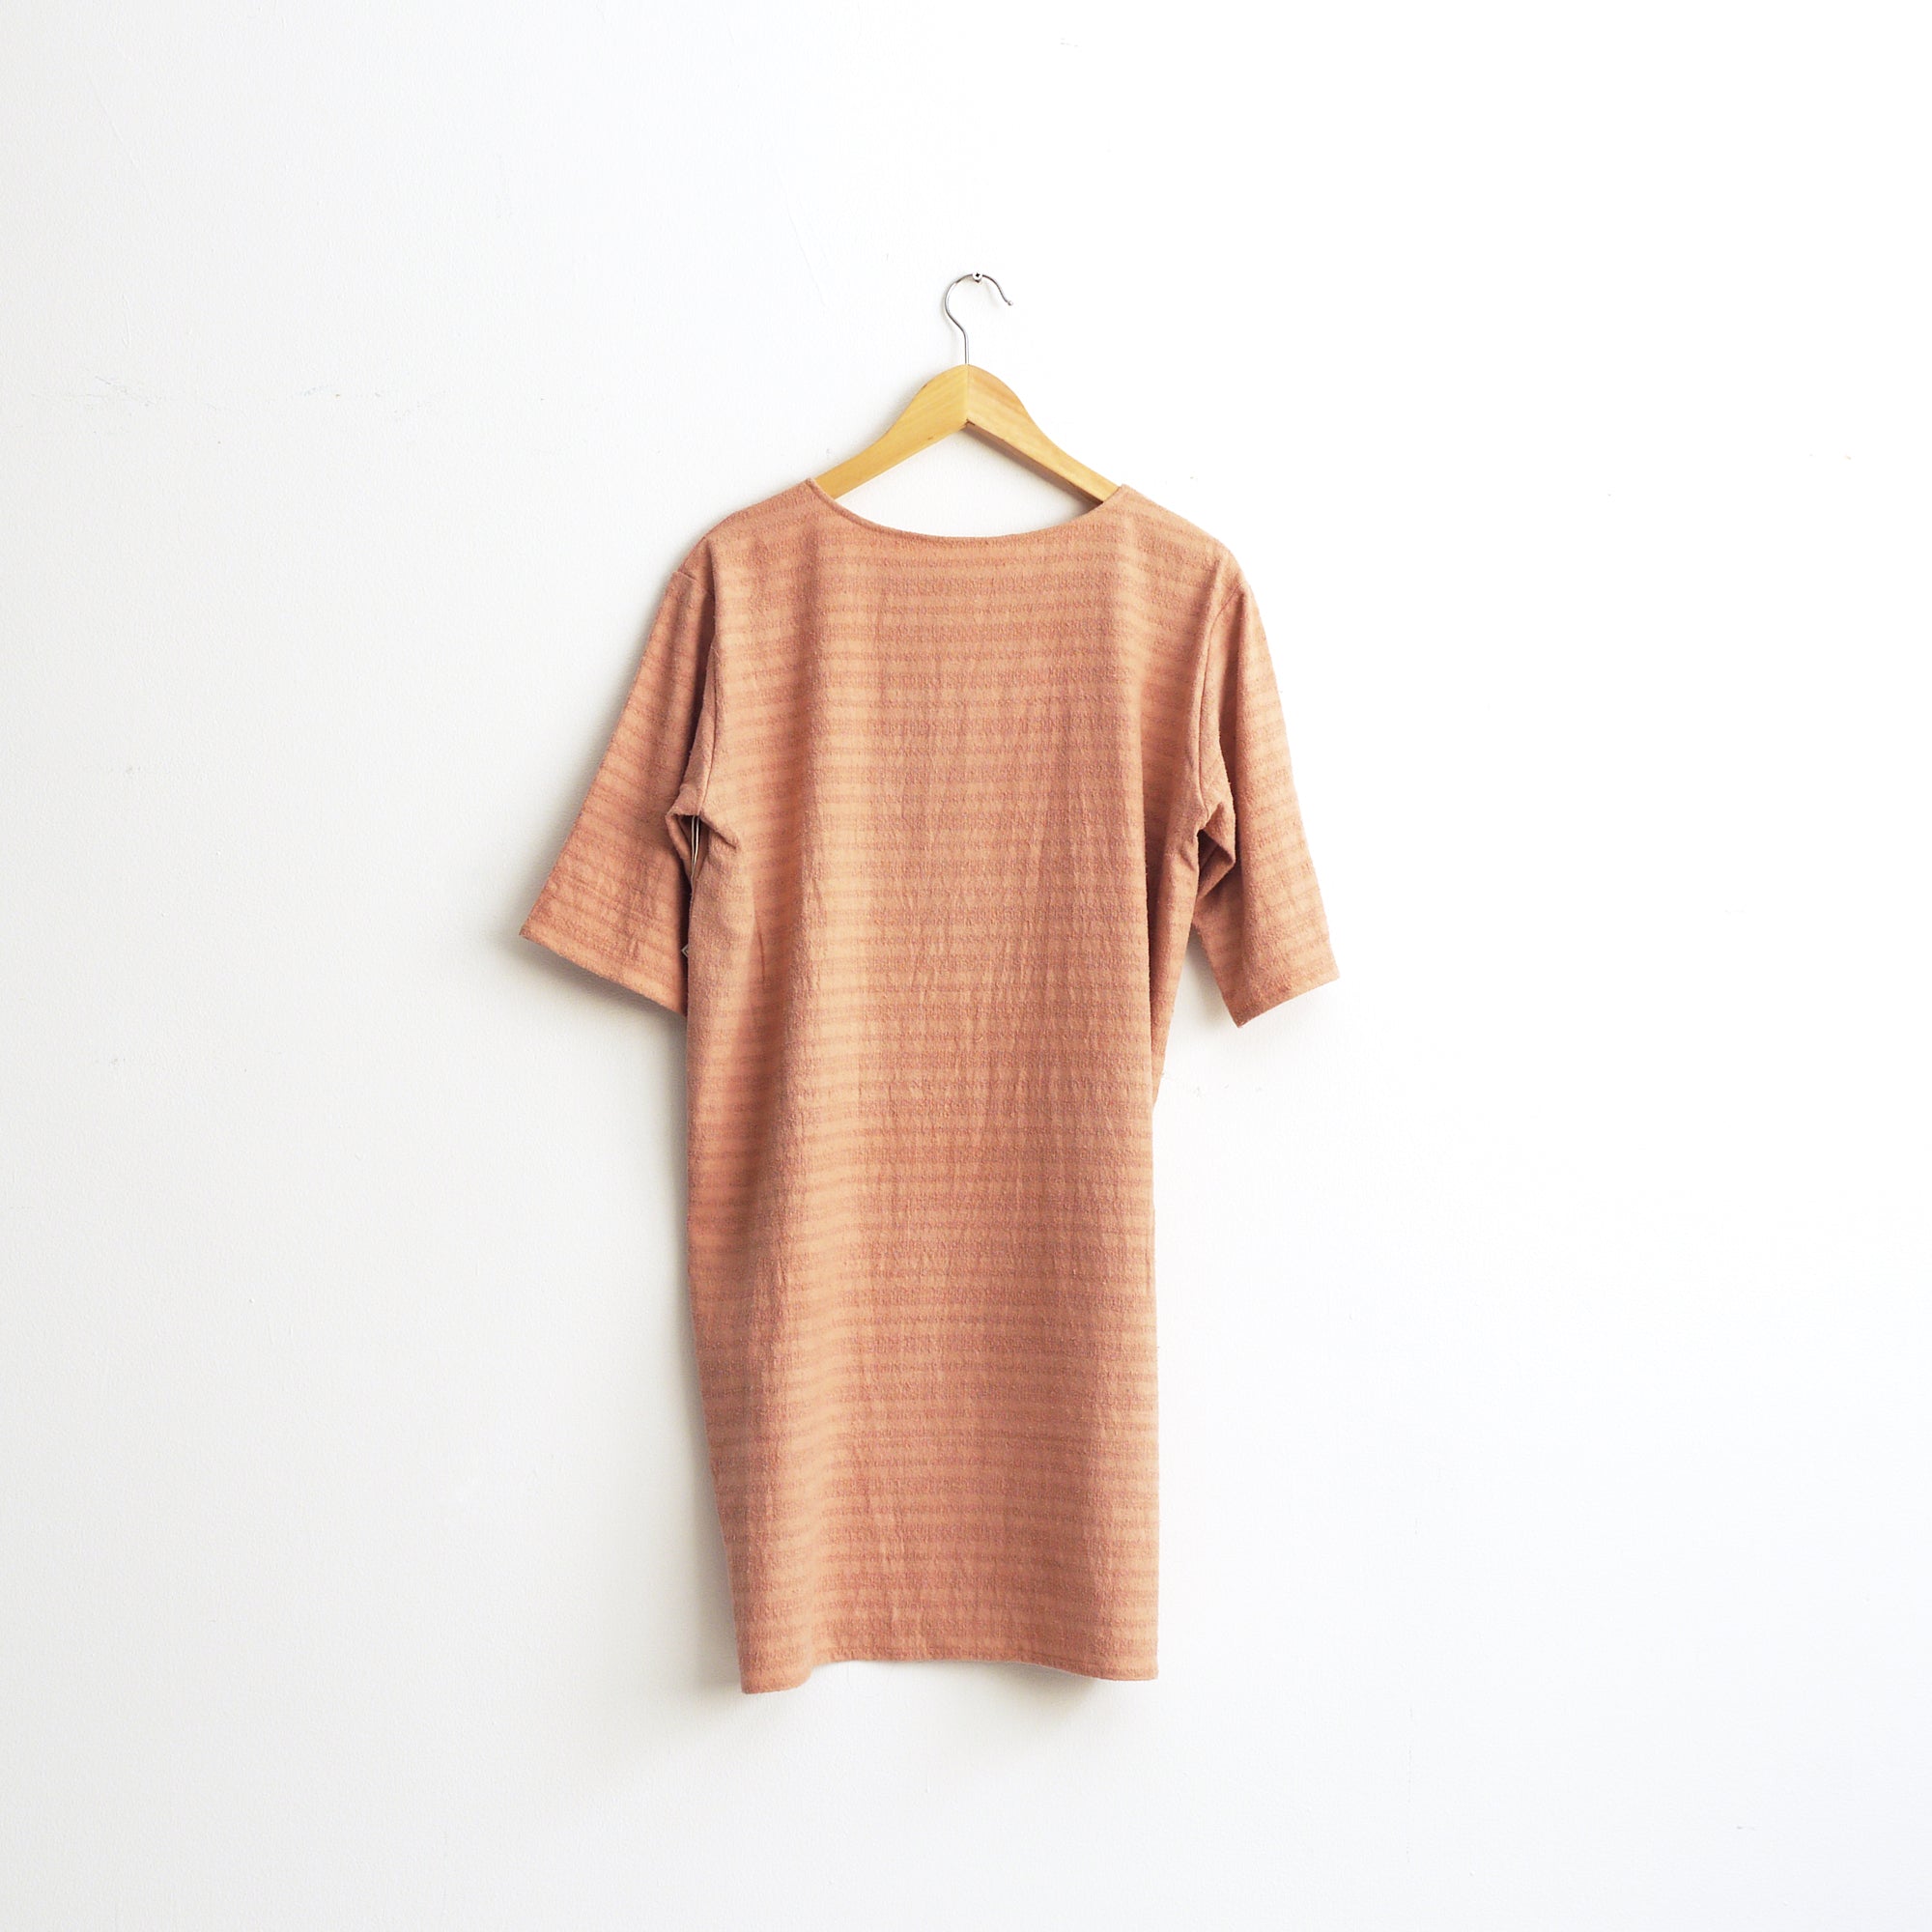 Raw silk knit dress. Plant dye dress with half sleeves. Size M.